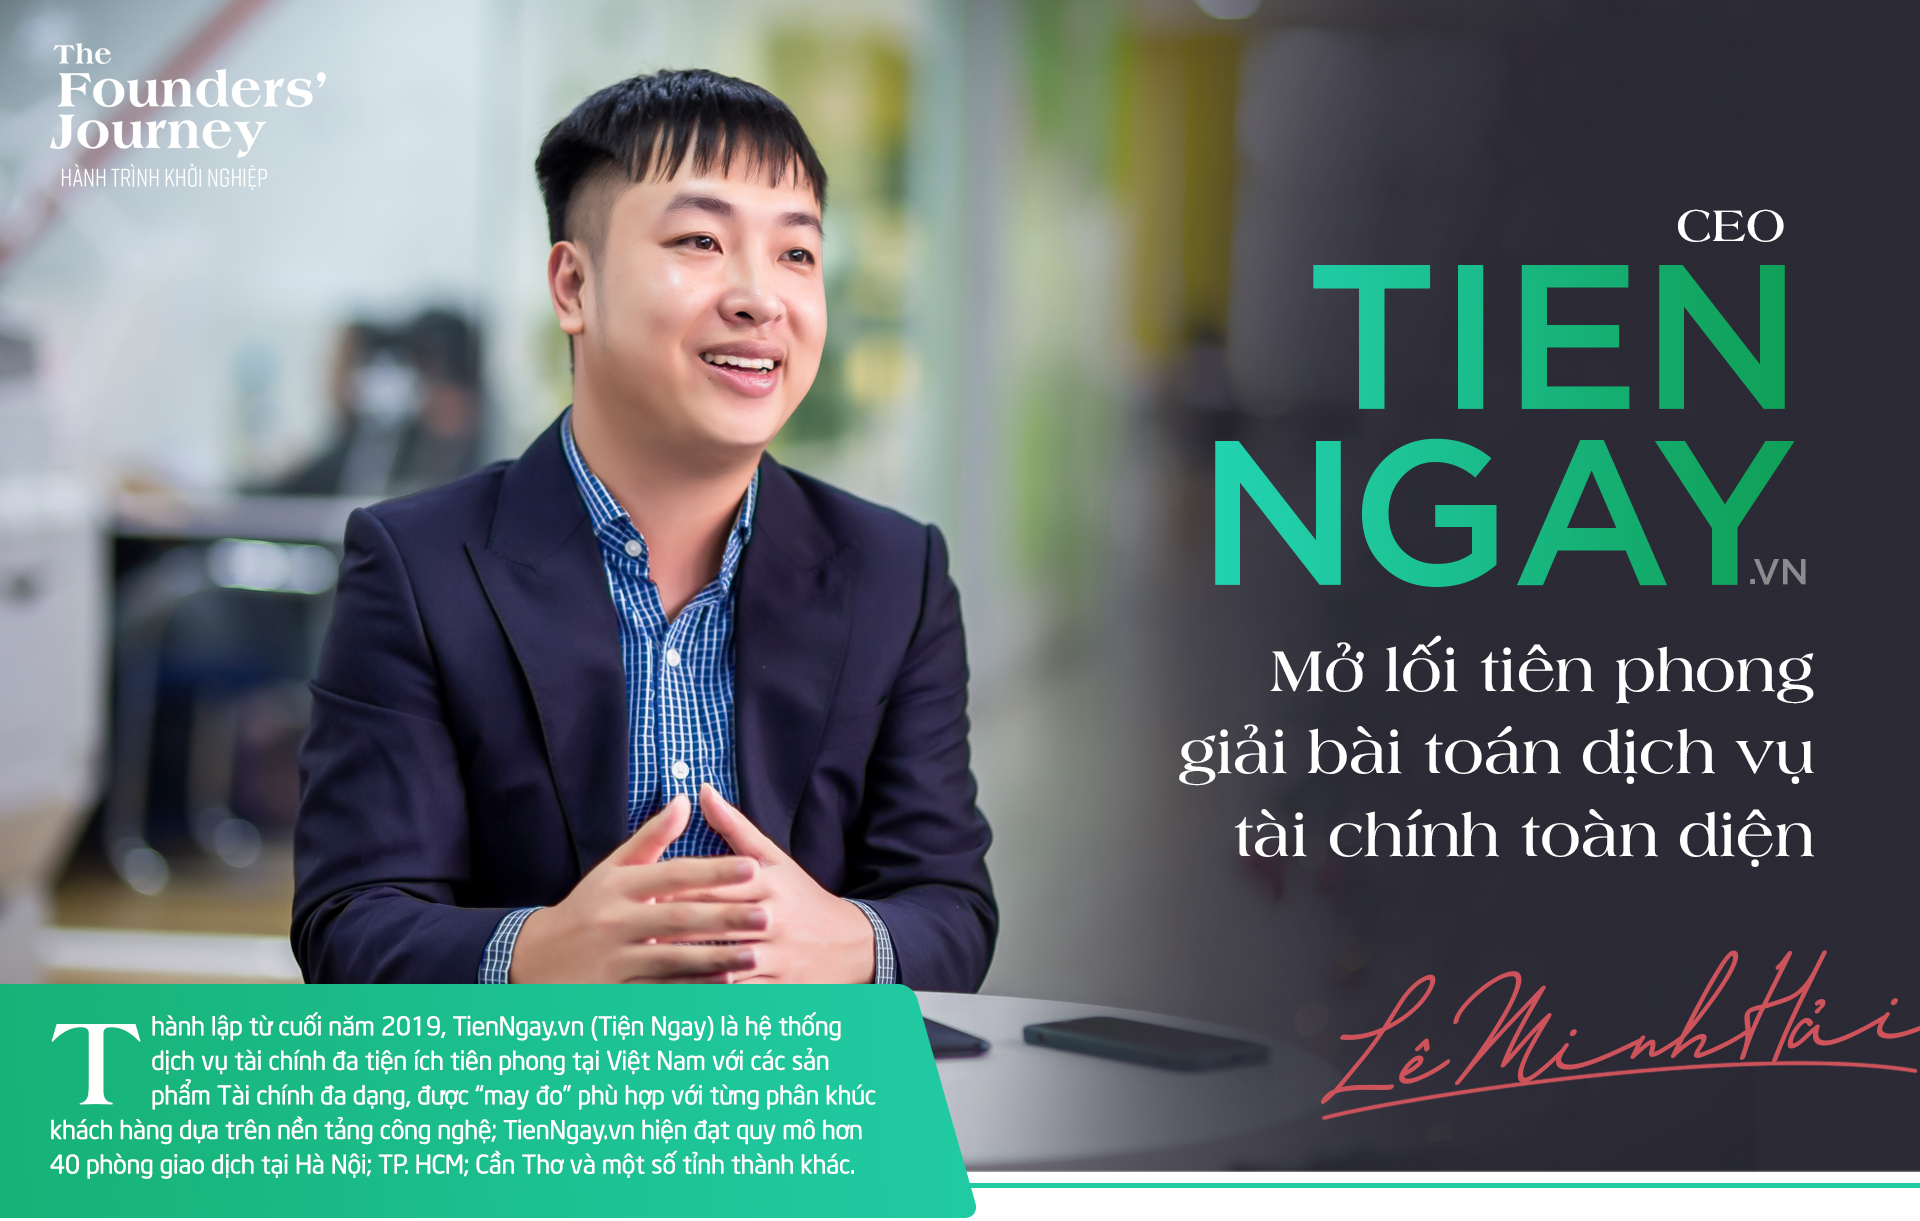 CEO TienNgay.vn: Mở lối tiên phong giải bài toán dịch vụ tài chính toàn diện